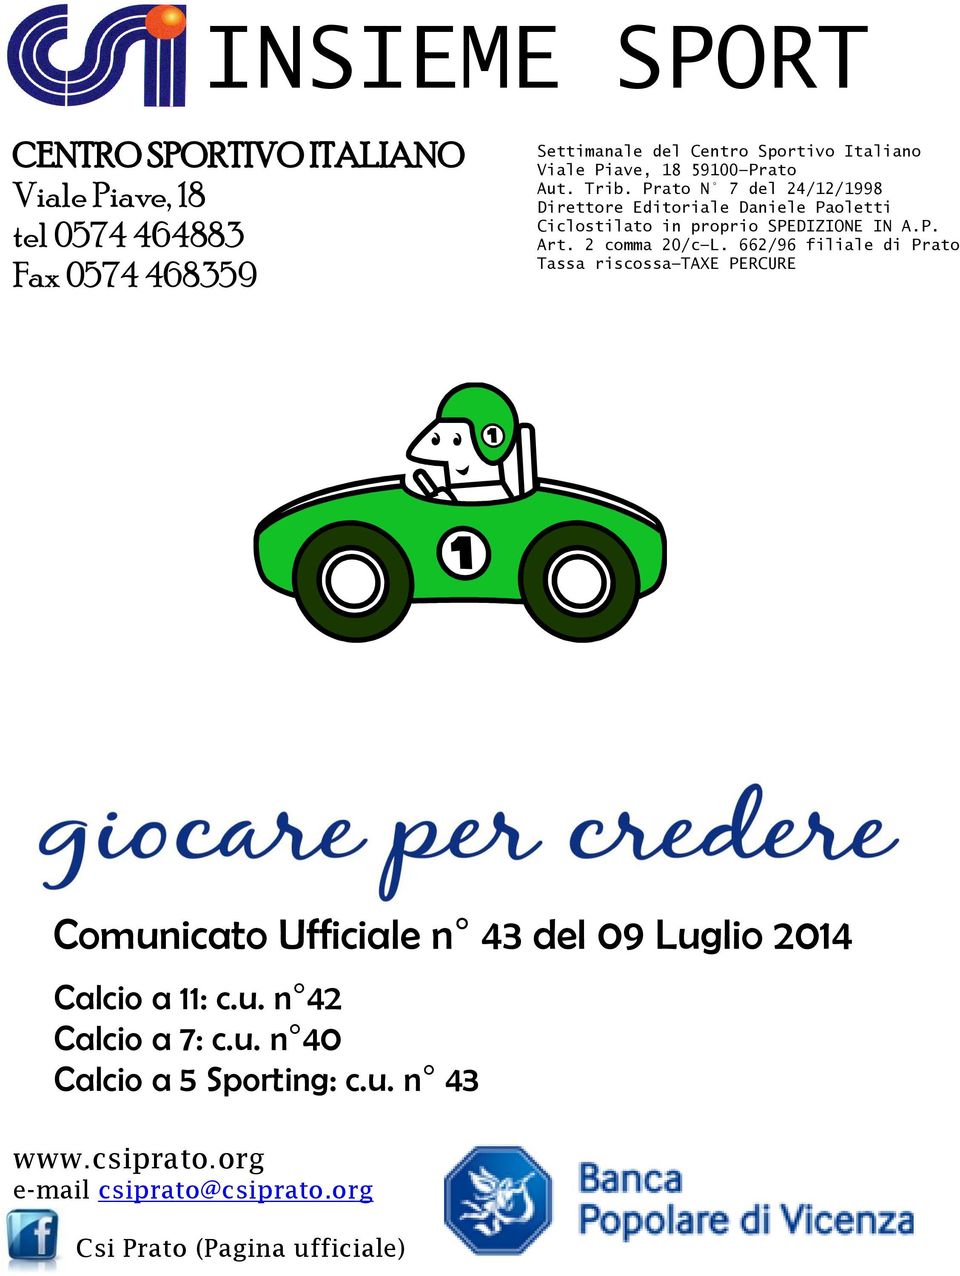 P. Art. 2 comma 20/c L. 662/96 filiale di Prato Tassa riscossa TAXE PERCURE Comunicato Ufficiale n 43 del 09 Luglio 2014 Calcio a 11: c.